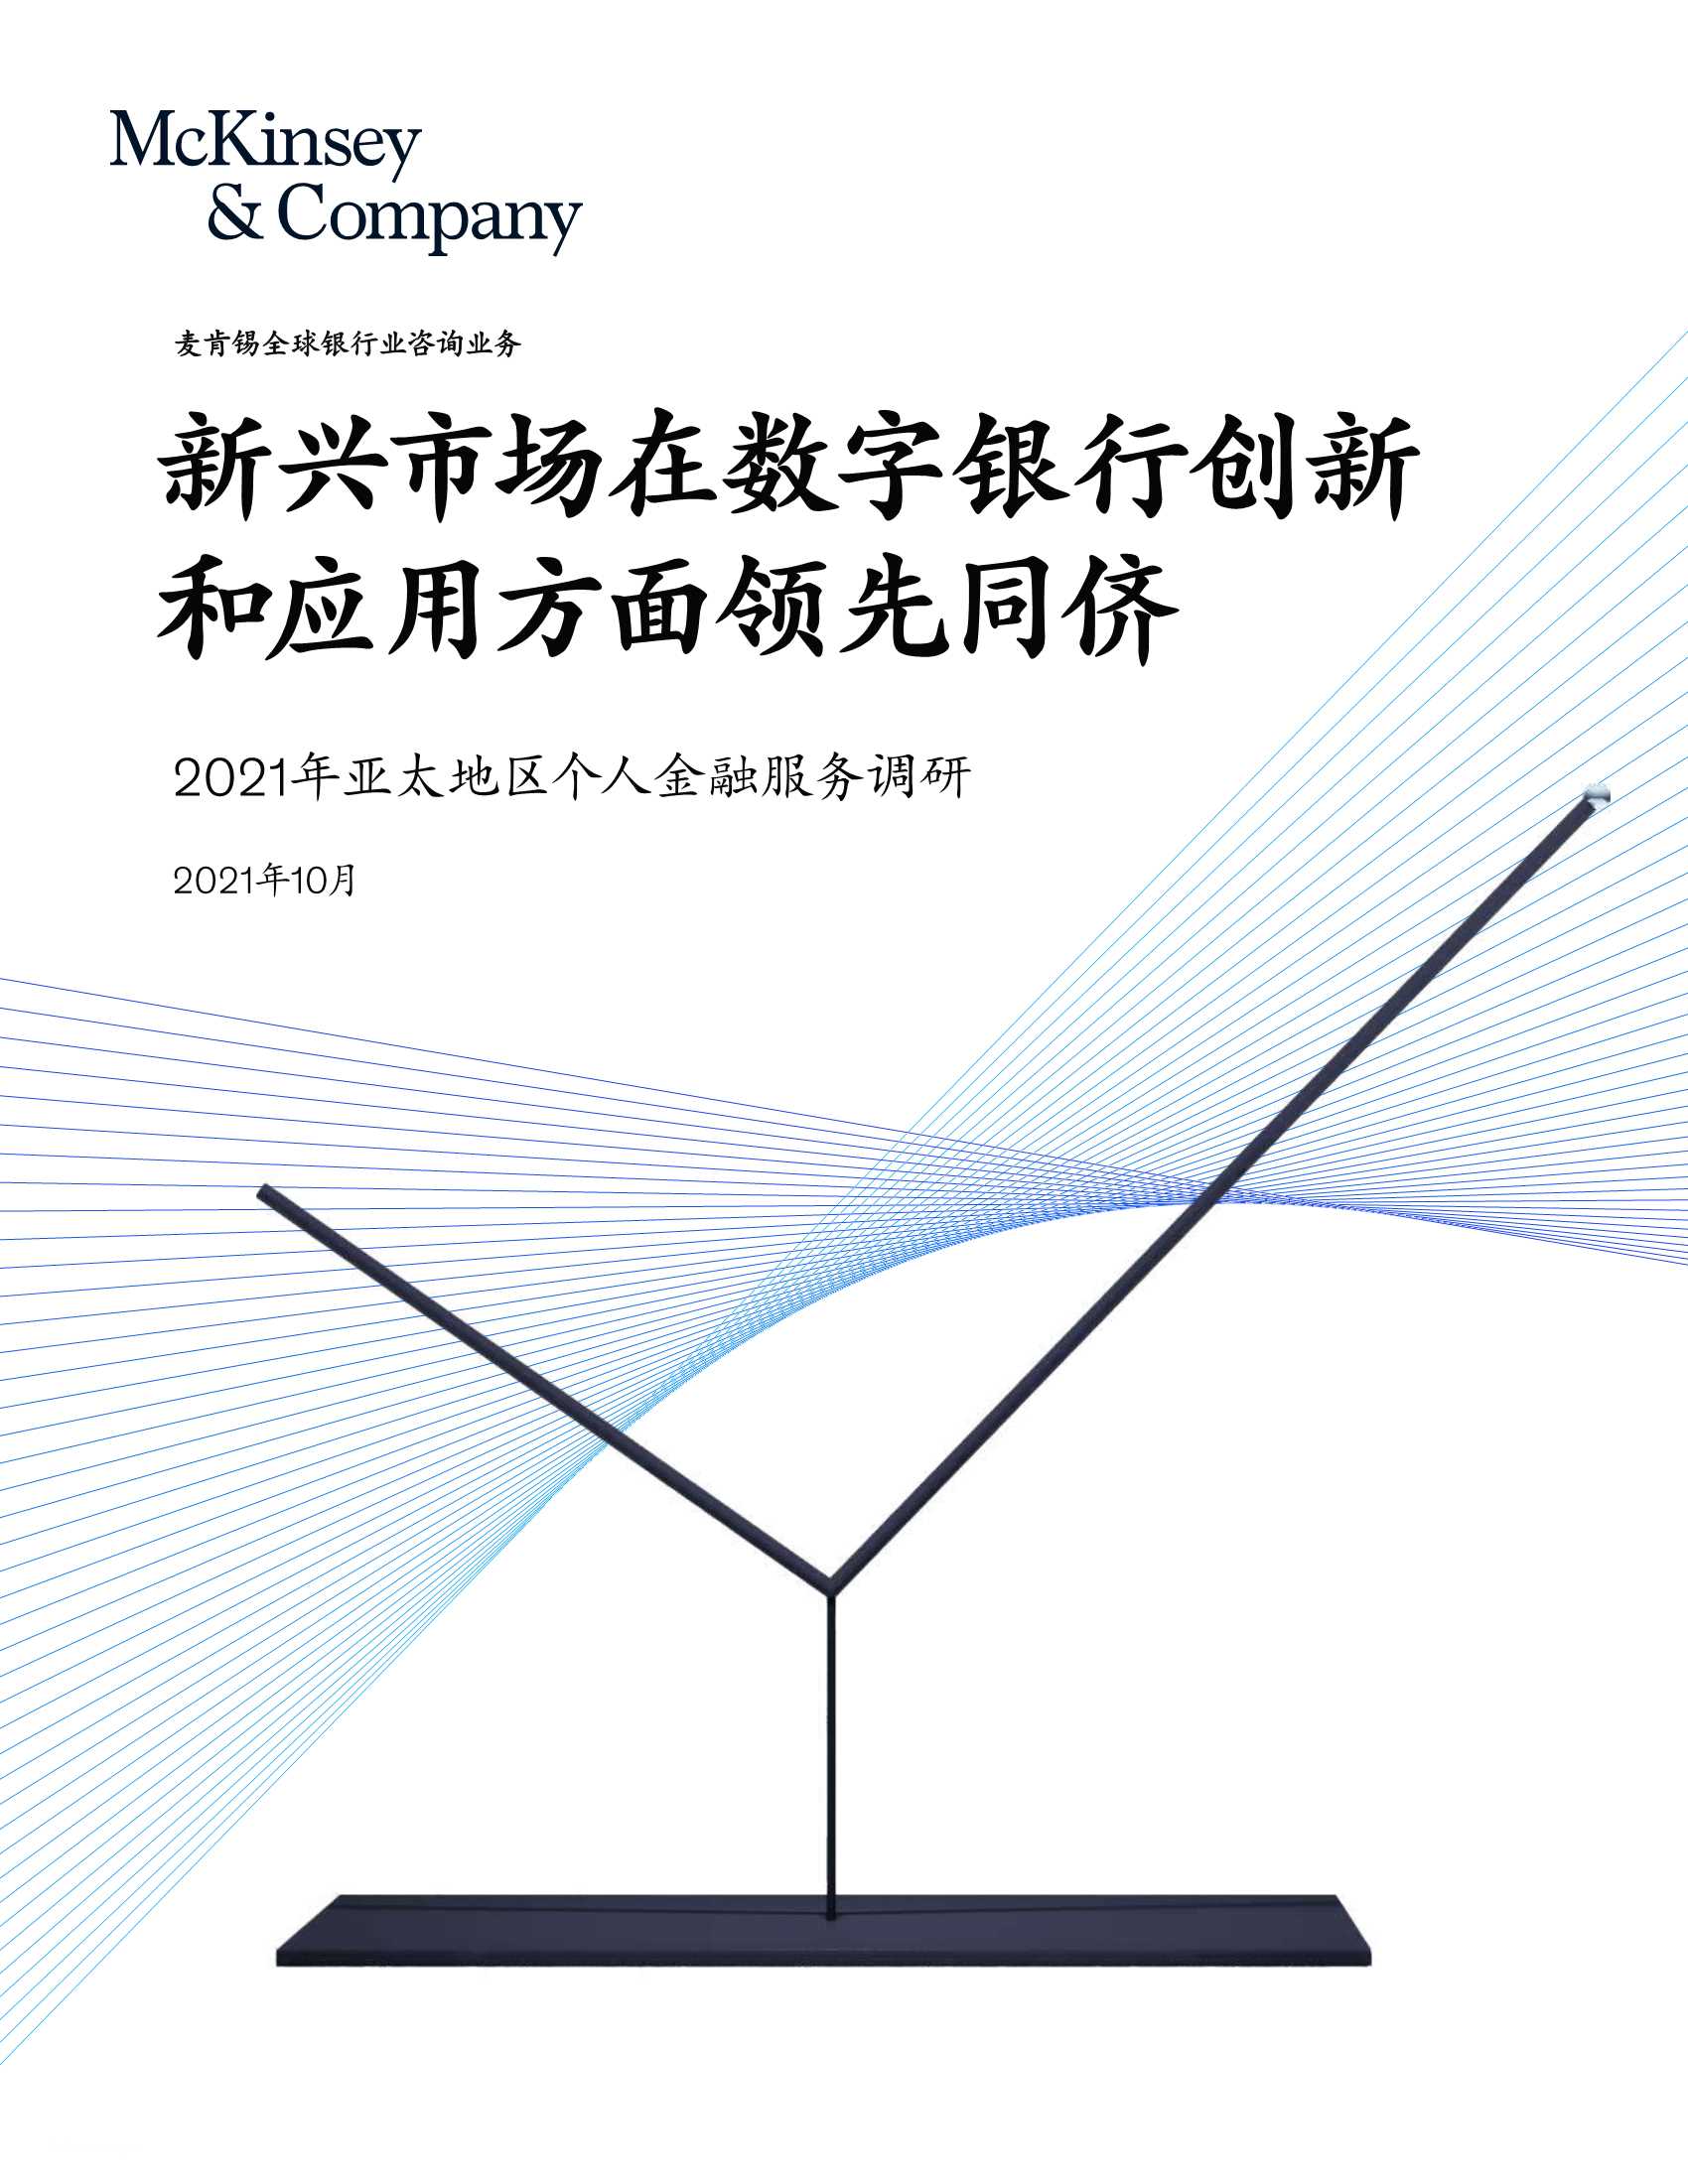 亚太新兴市场在数字银行创新和应用上领先同侪-2021.11-21页